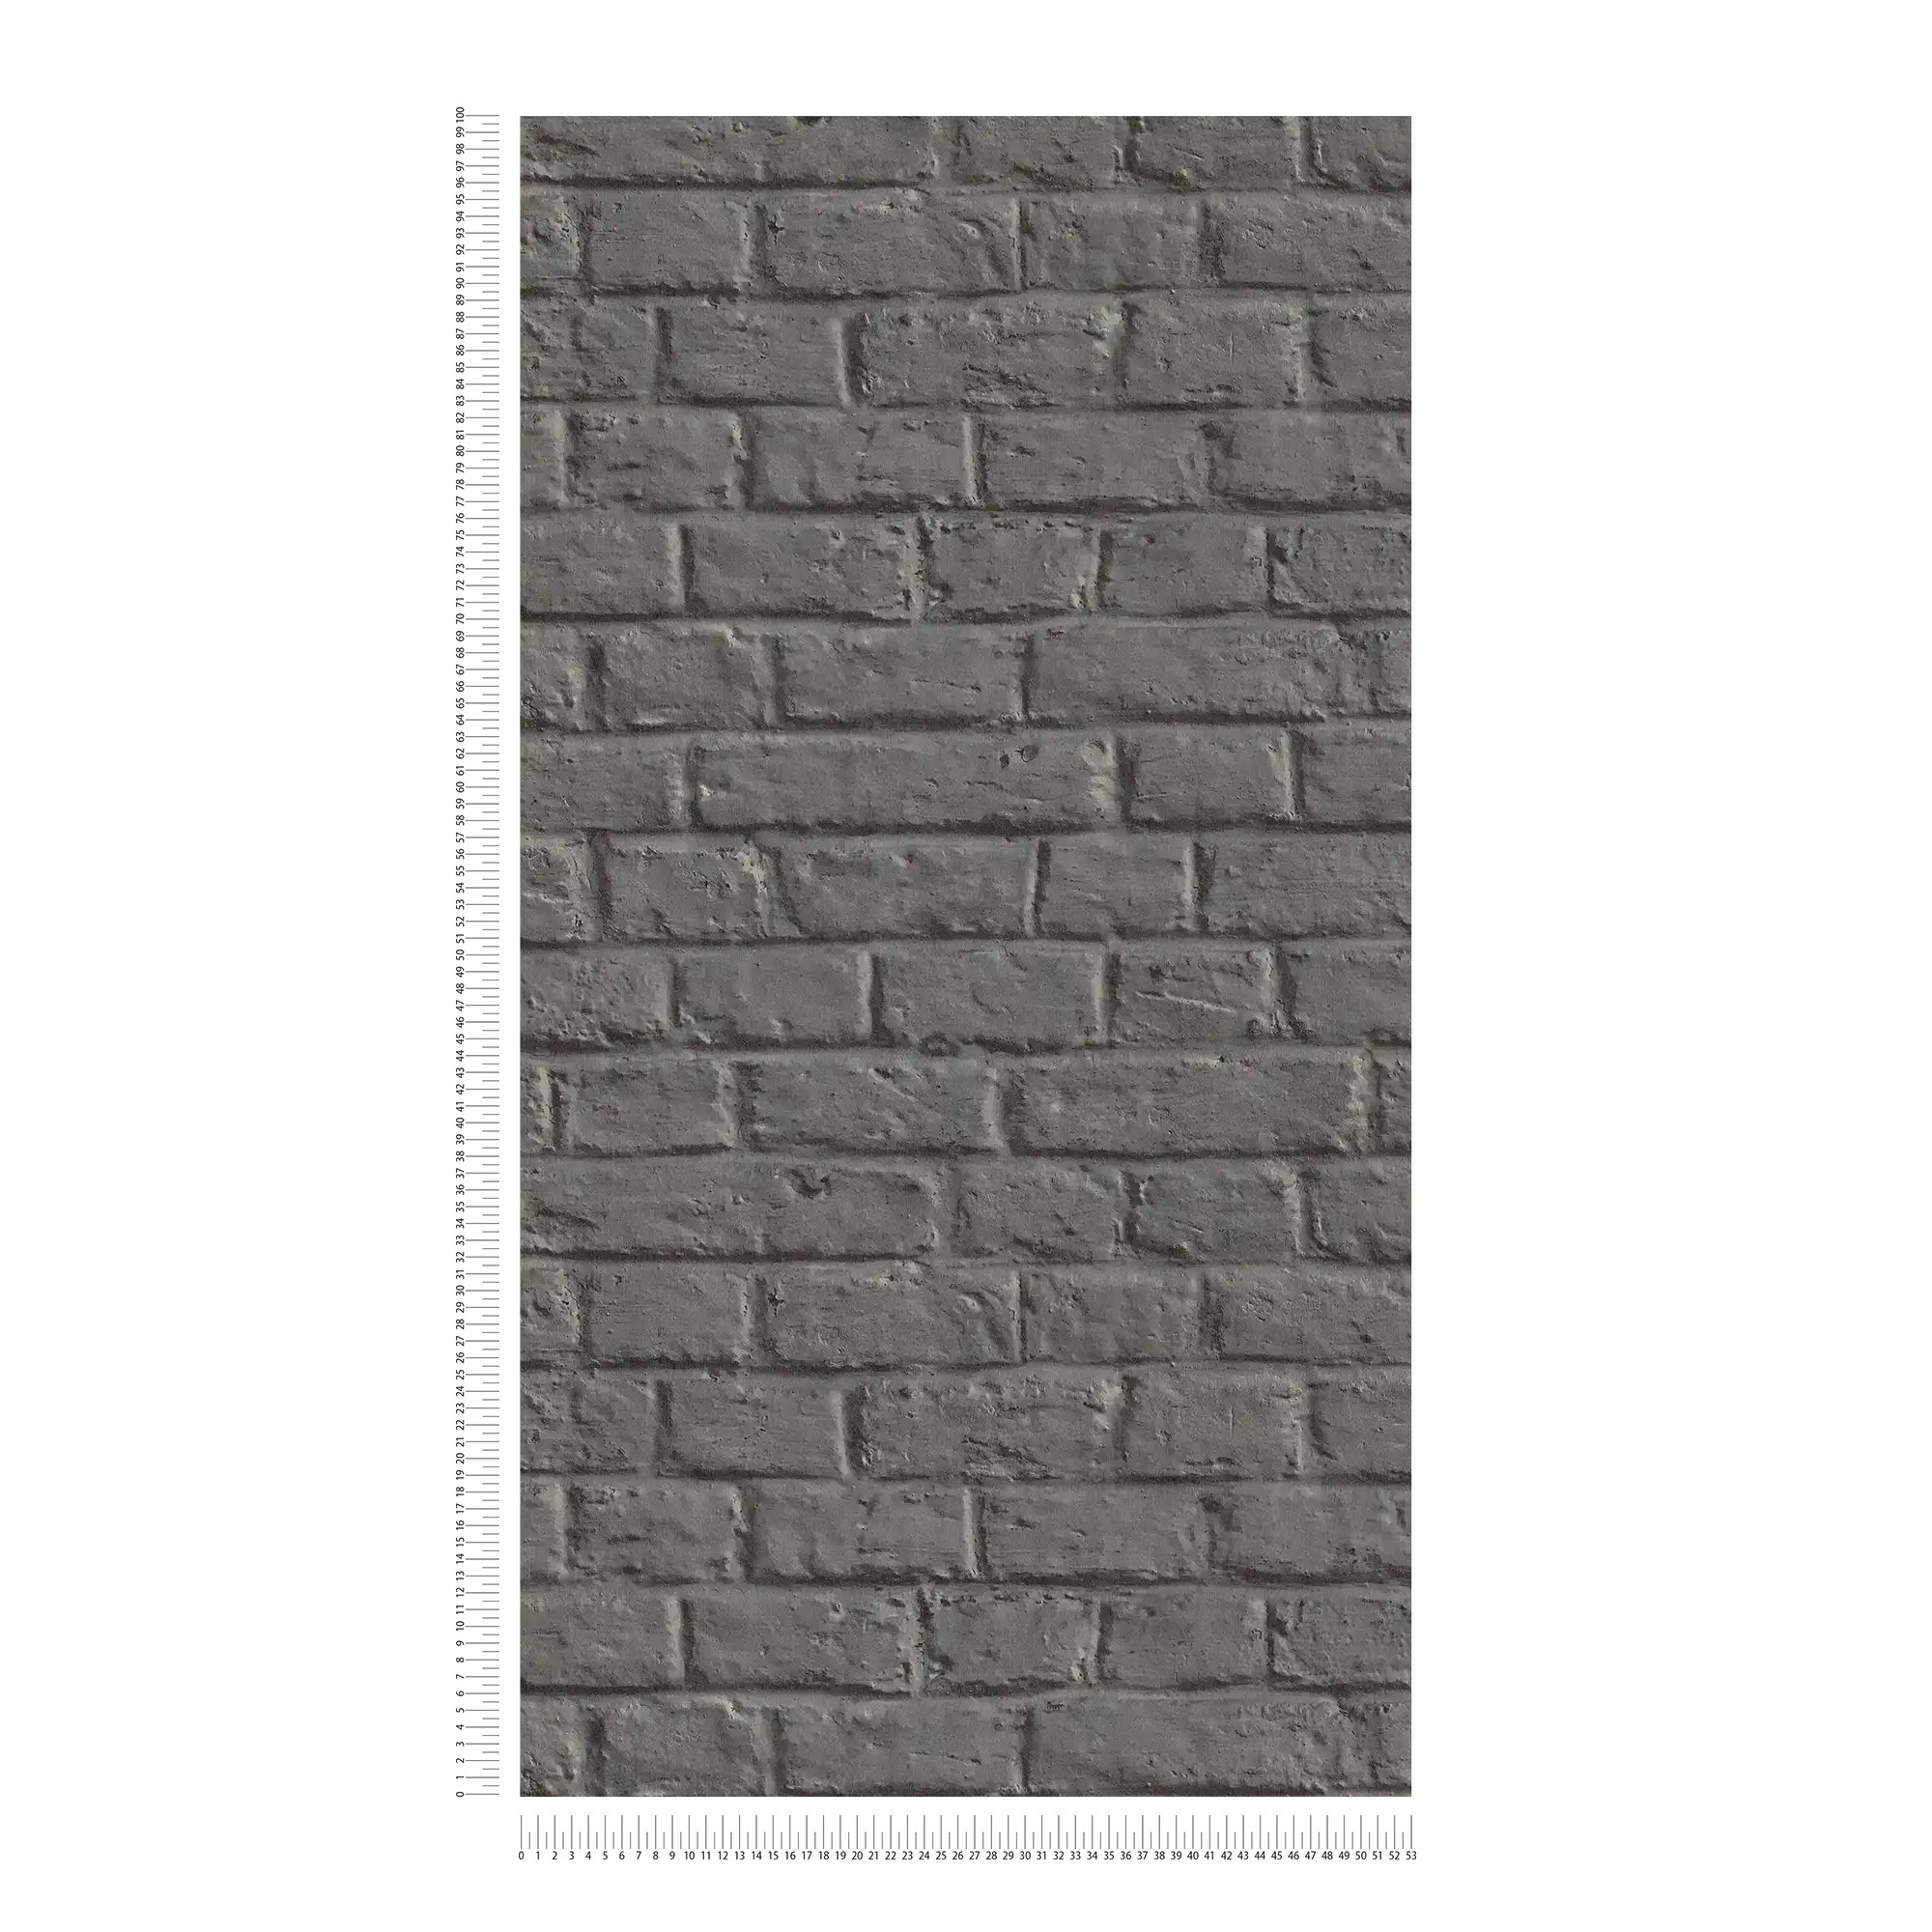             Steenbehang in gladde baksteenlook - grijs, zwart
        